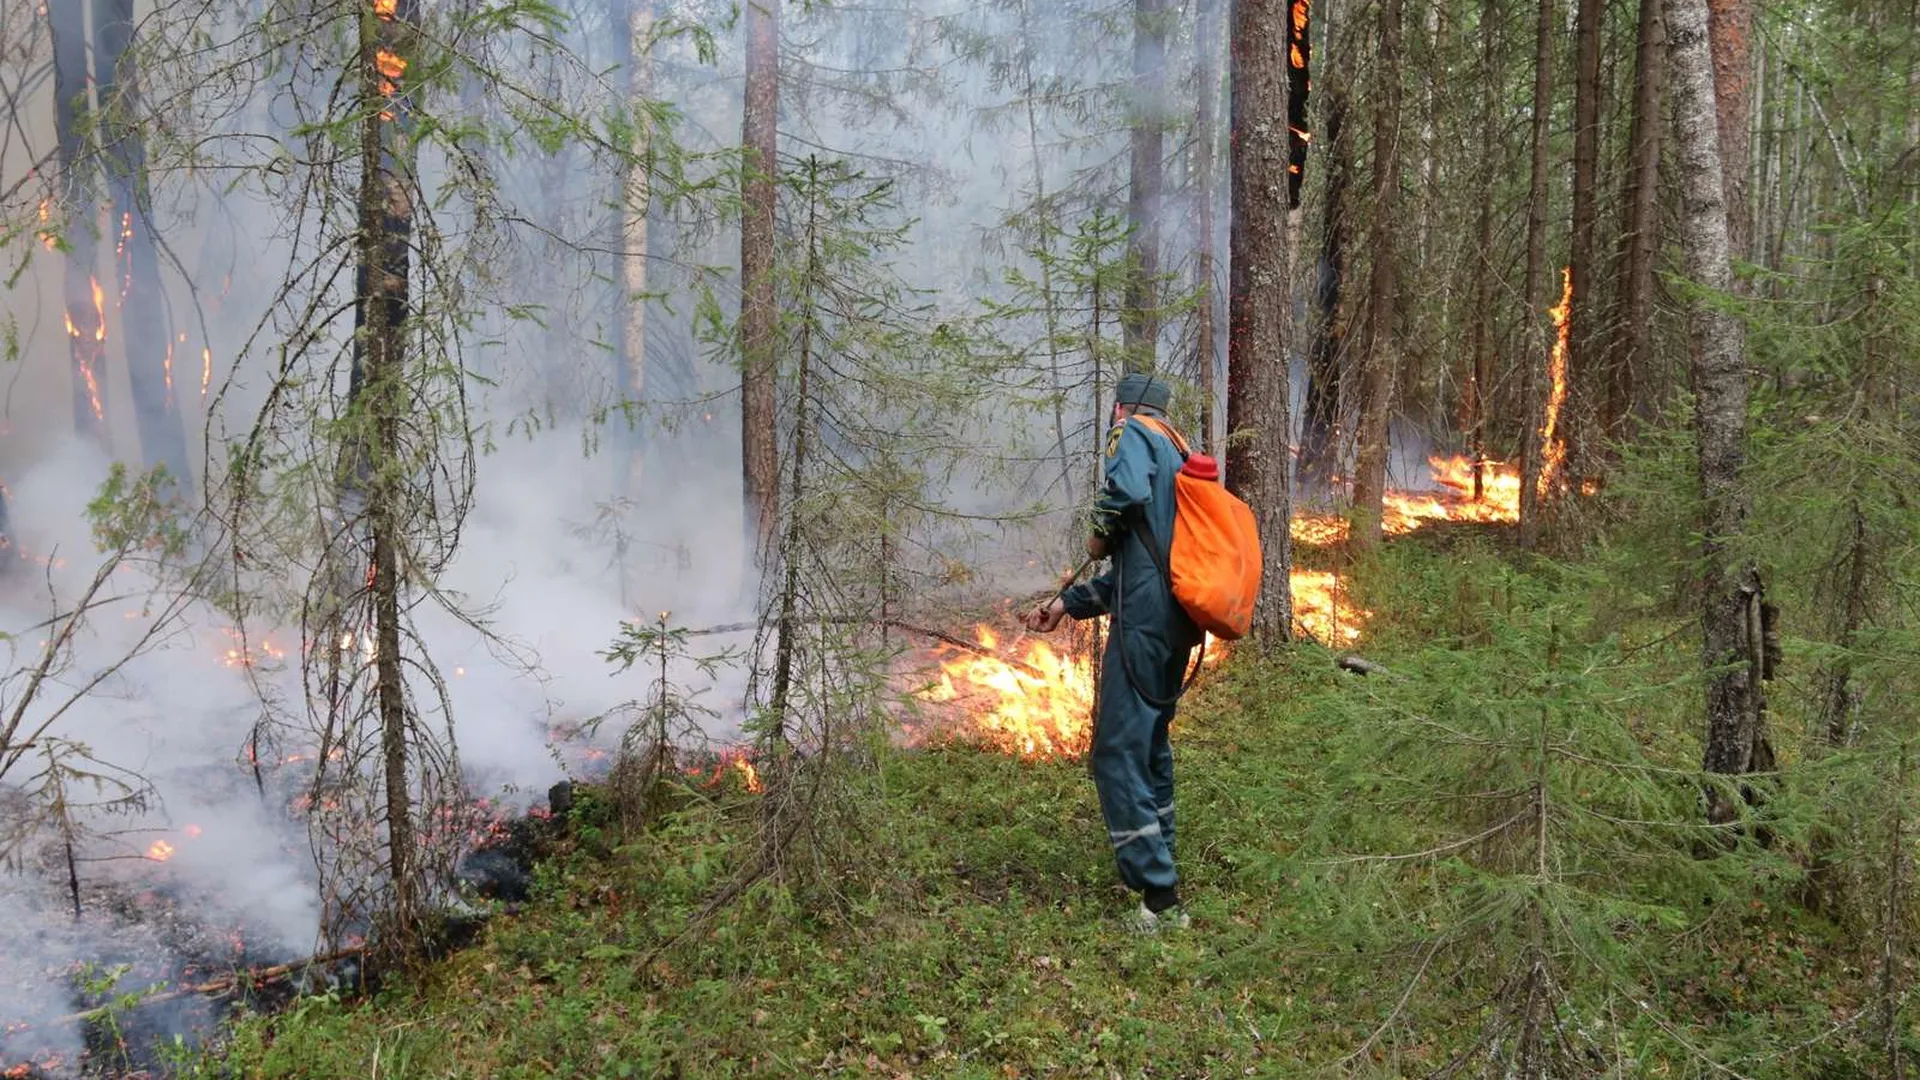 Источники лесных пожаров